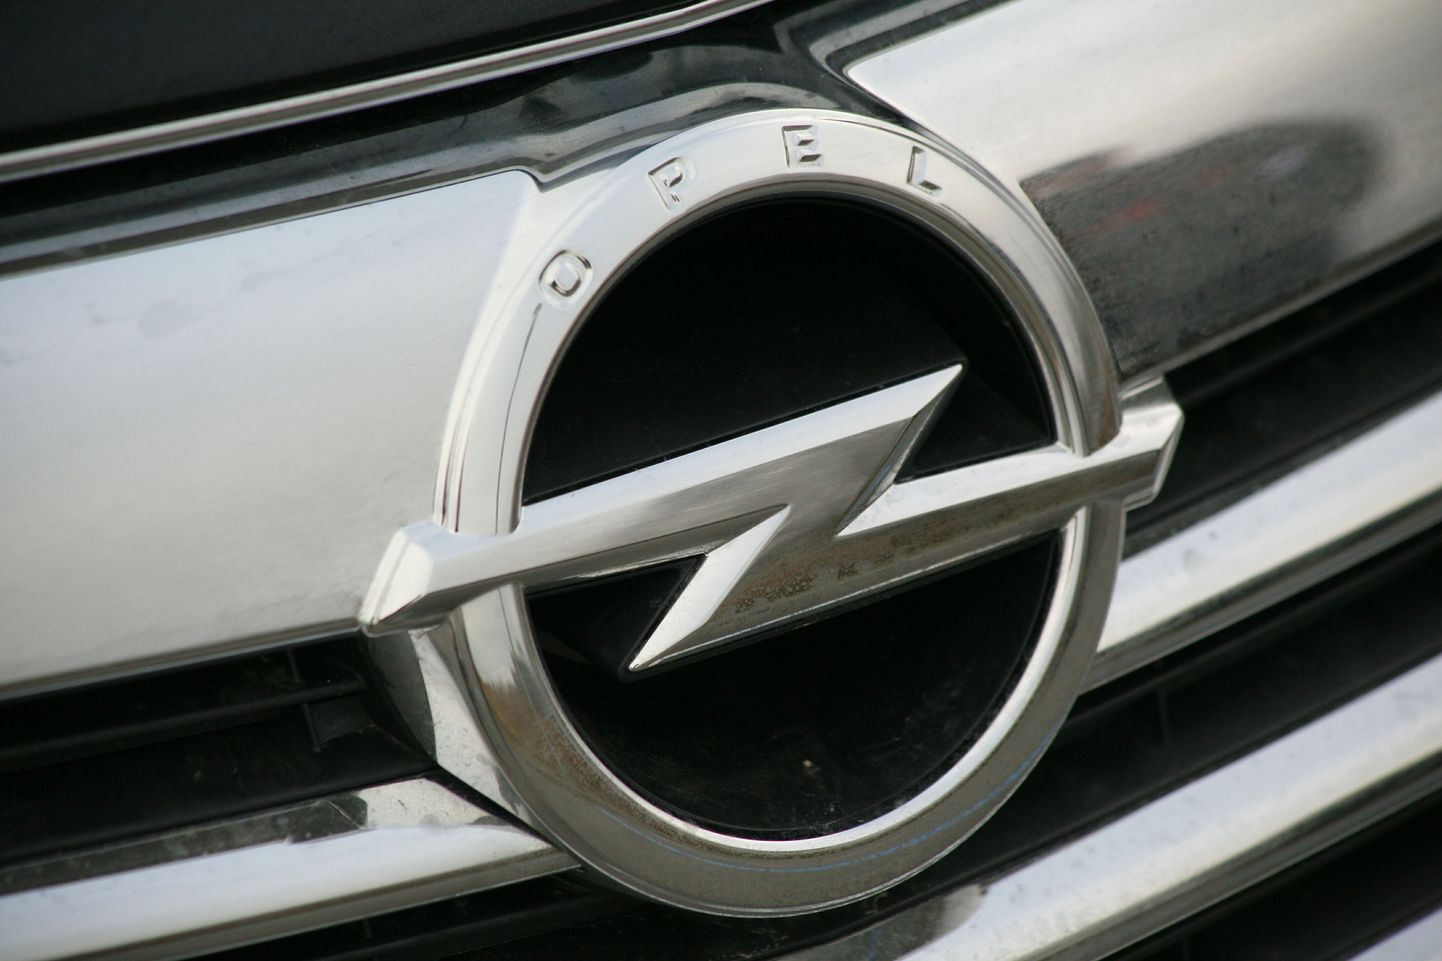 Miniliisingut pakutakse esialgu kasutatud Opeli sõidukitele, kuid tulevikus on plaan laiendada renditavate sõidukite valikut veelgi.